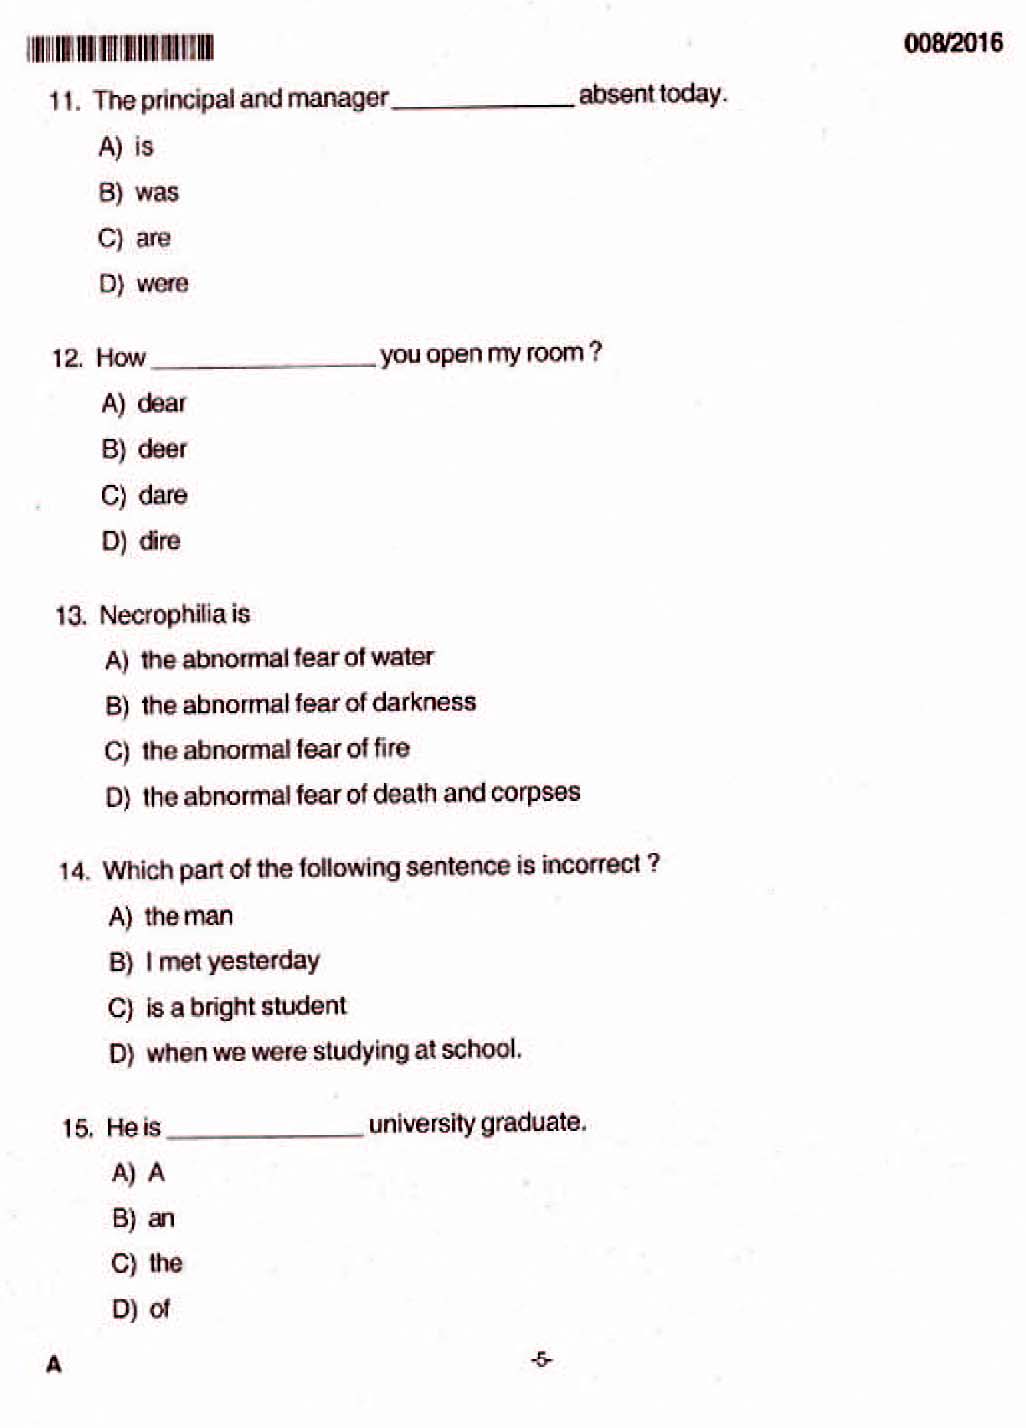 Kerala PSC Junior Assistant Exam 2016 Question Paper Code 0082016 3